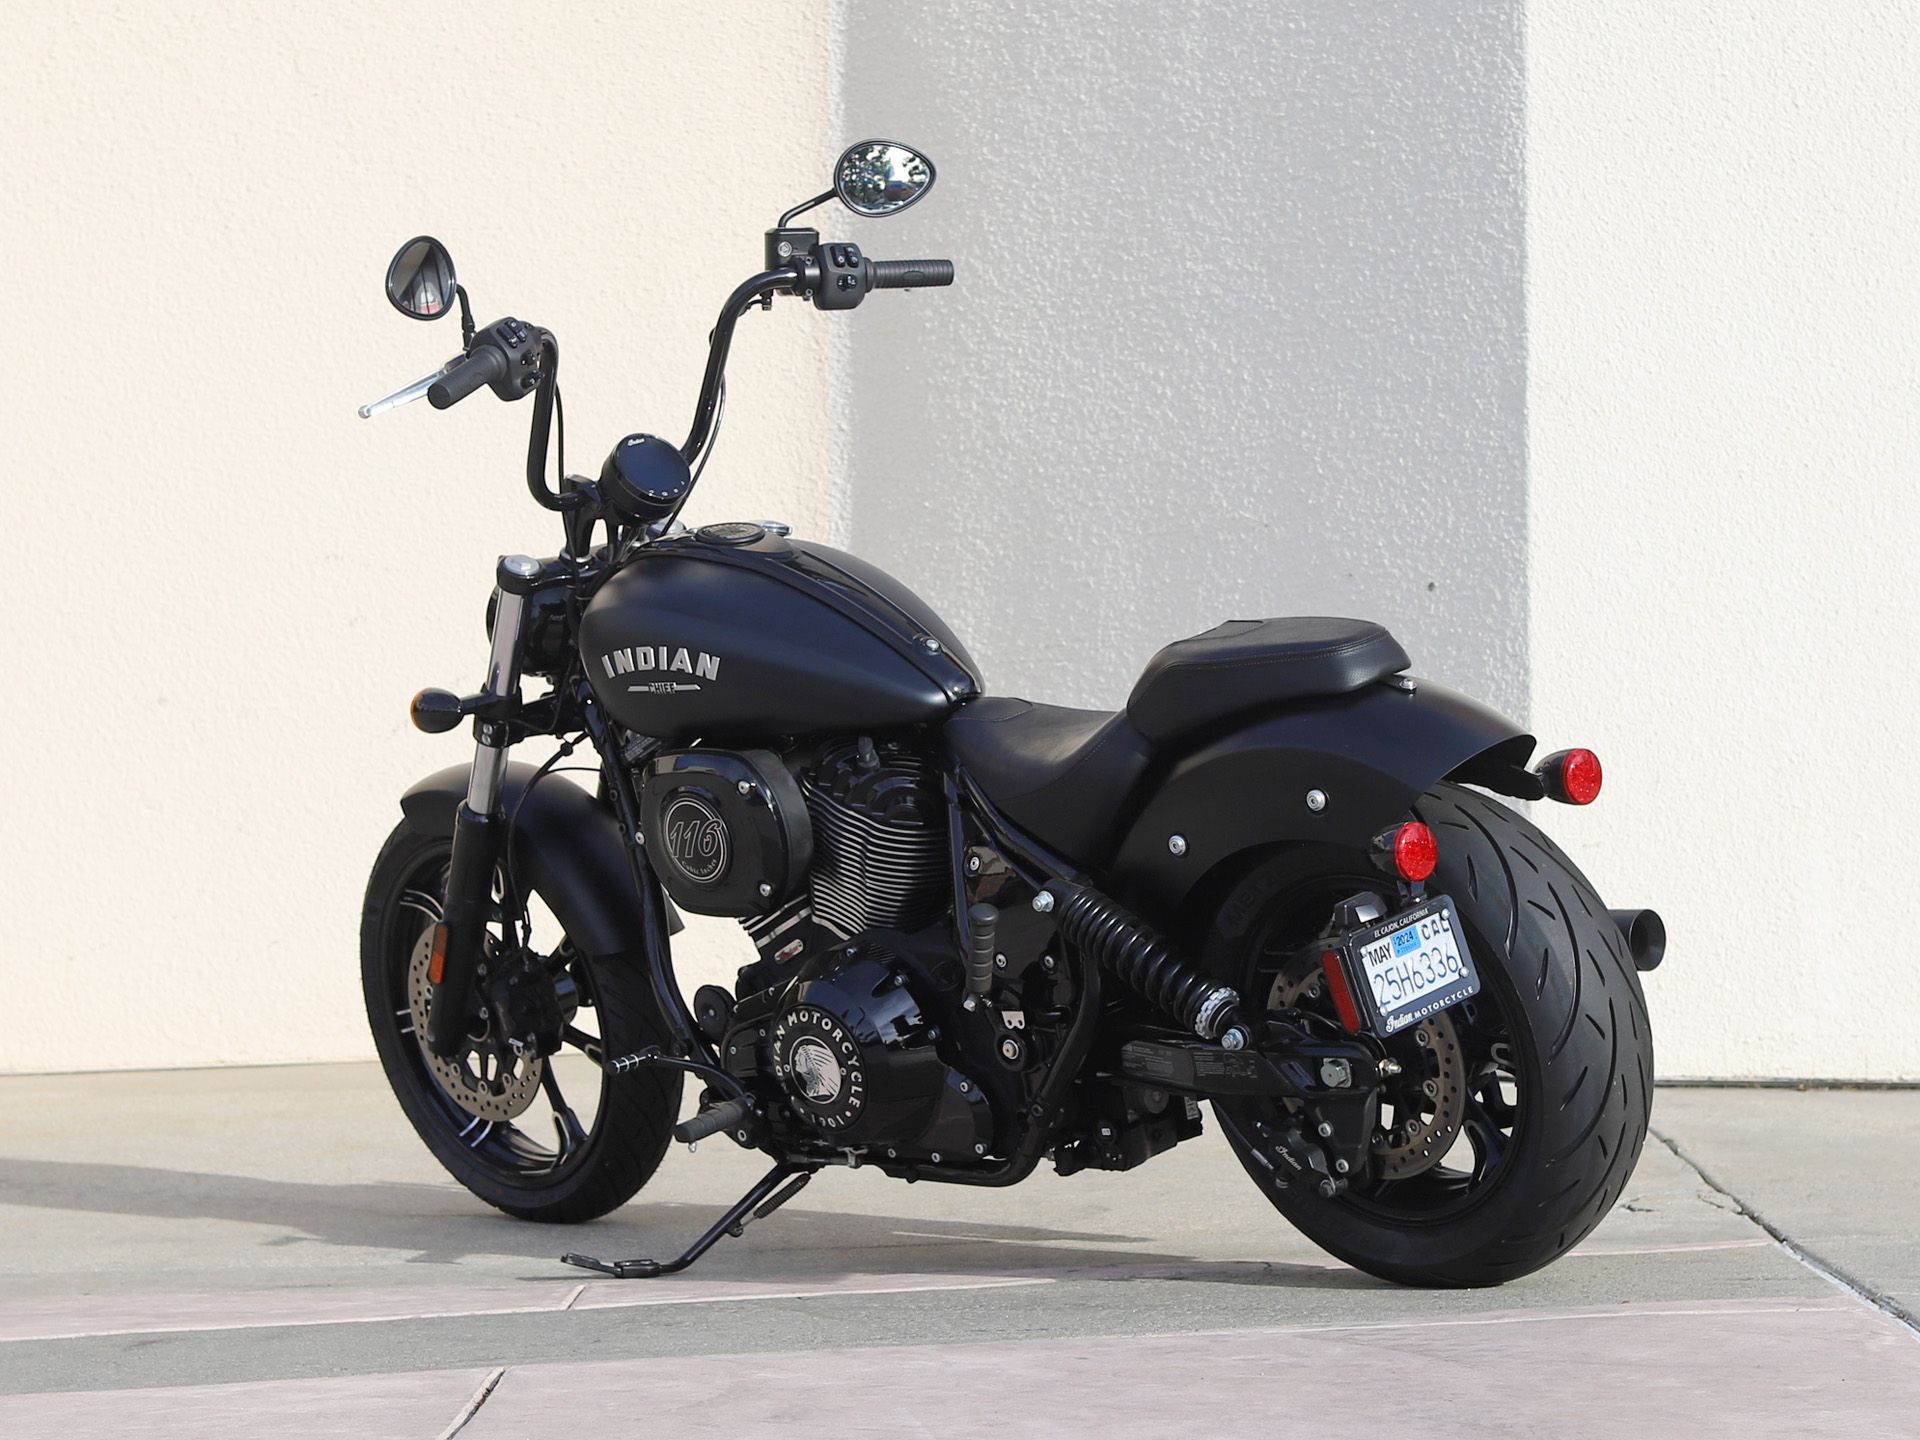 2022 Indian Motorcycle Chief Dark Horse® in EL Cajon, California - Photo 7